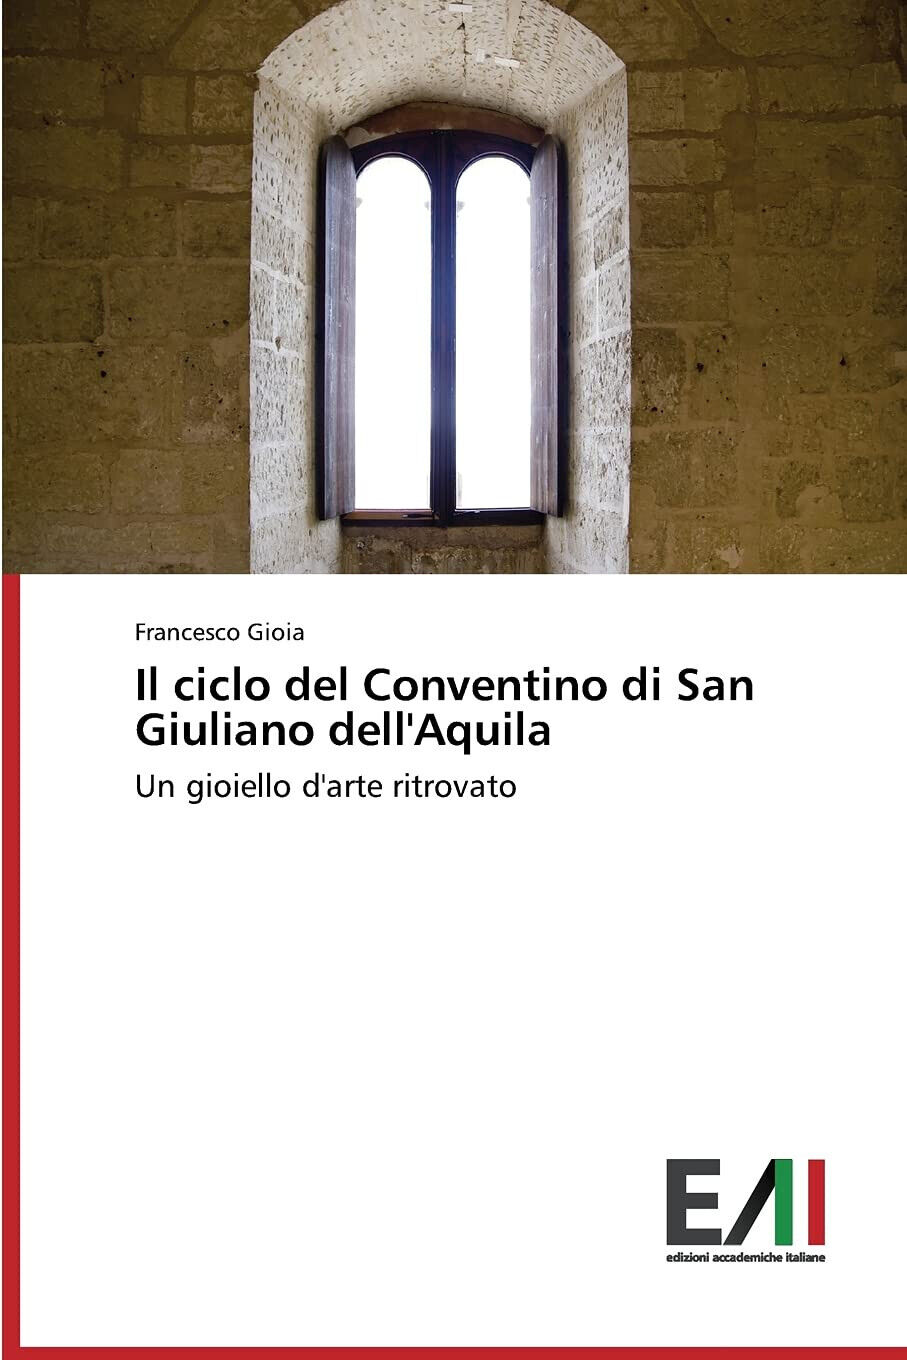 Il ciclo del Conventino di San Giuliano dell'Aquila - Francesco Gioia - 2014